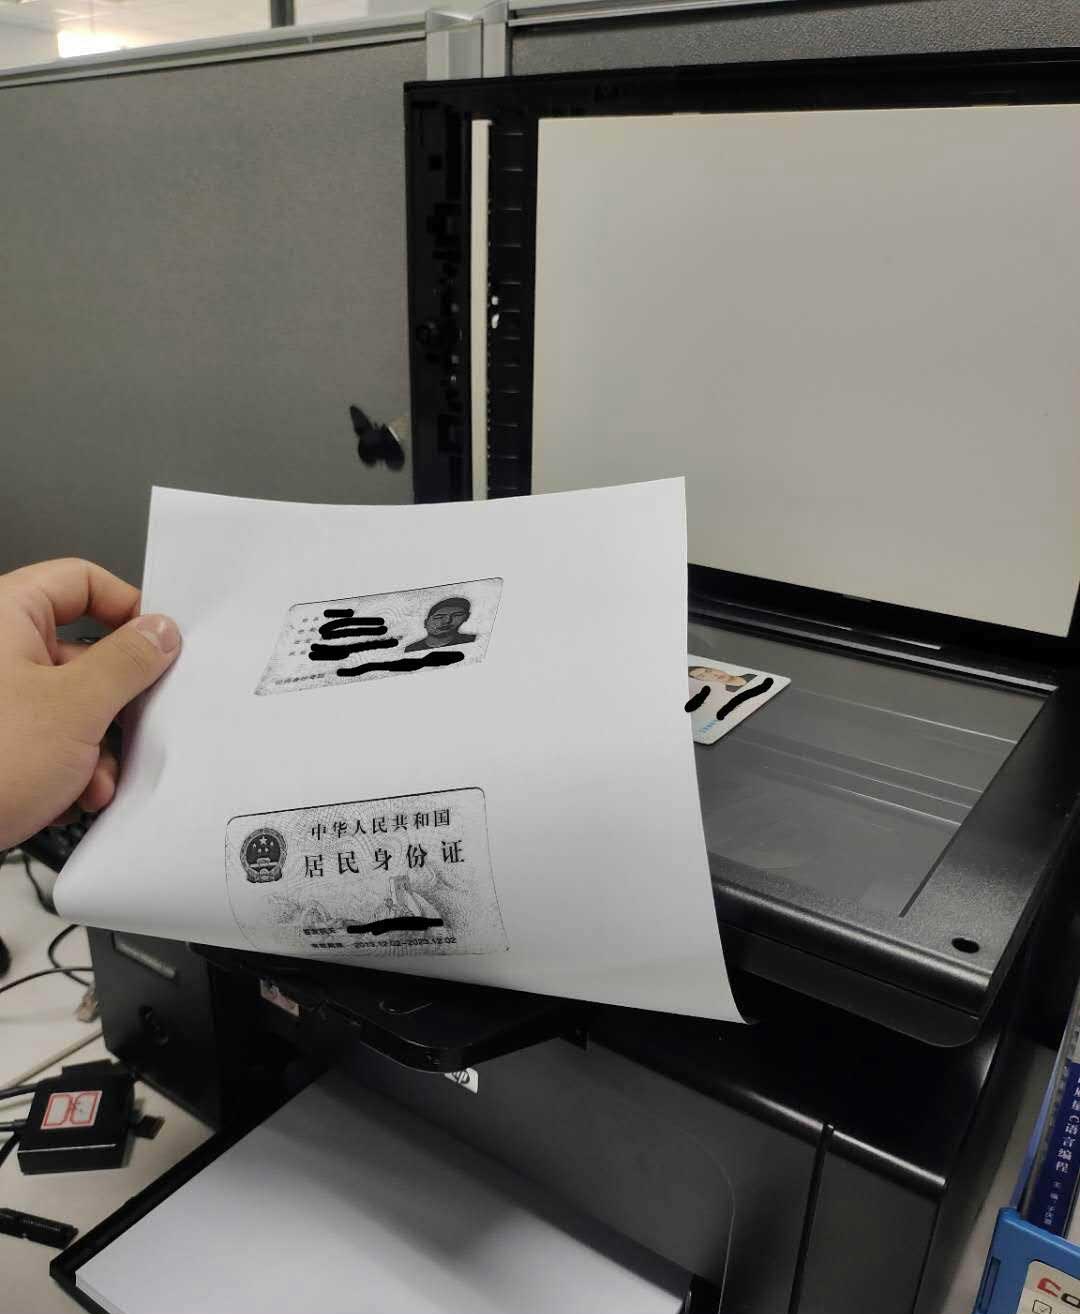 普通家用打印机怎么复印身份证? 身份证复印在一张纸上的方法